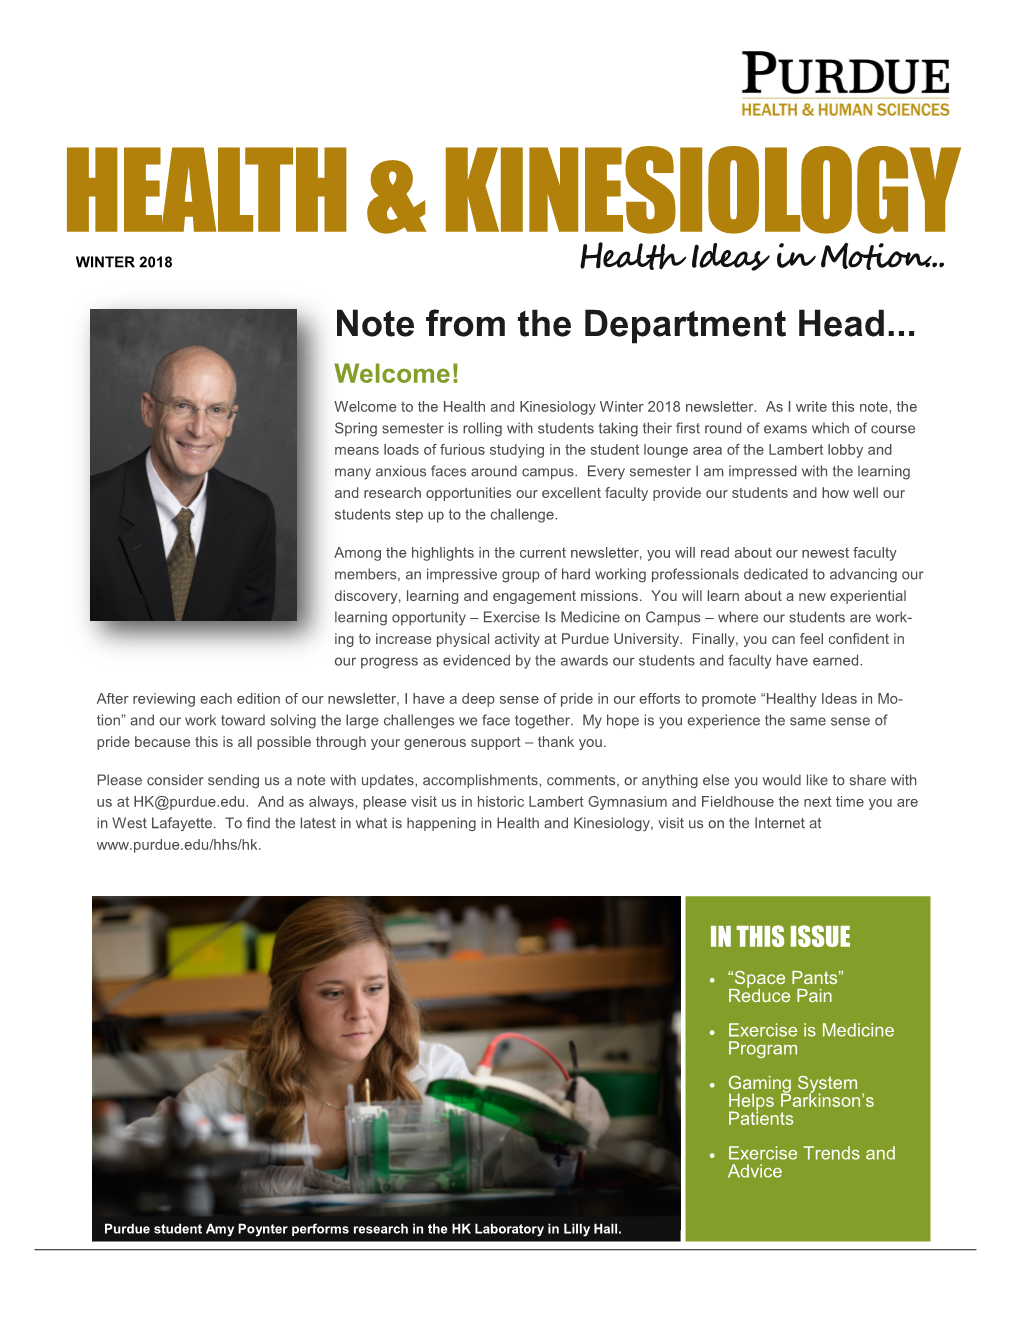 Health & Kinesiology